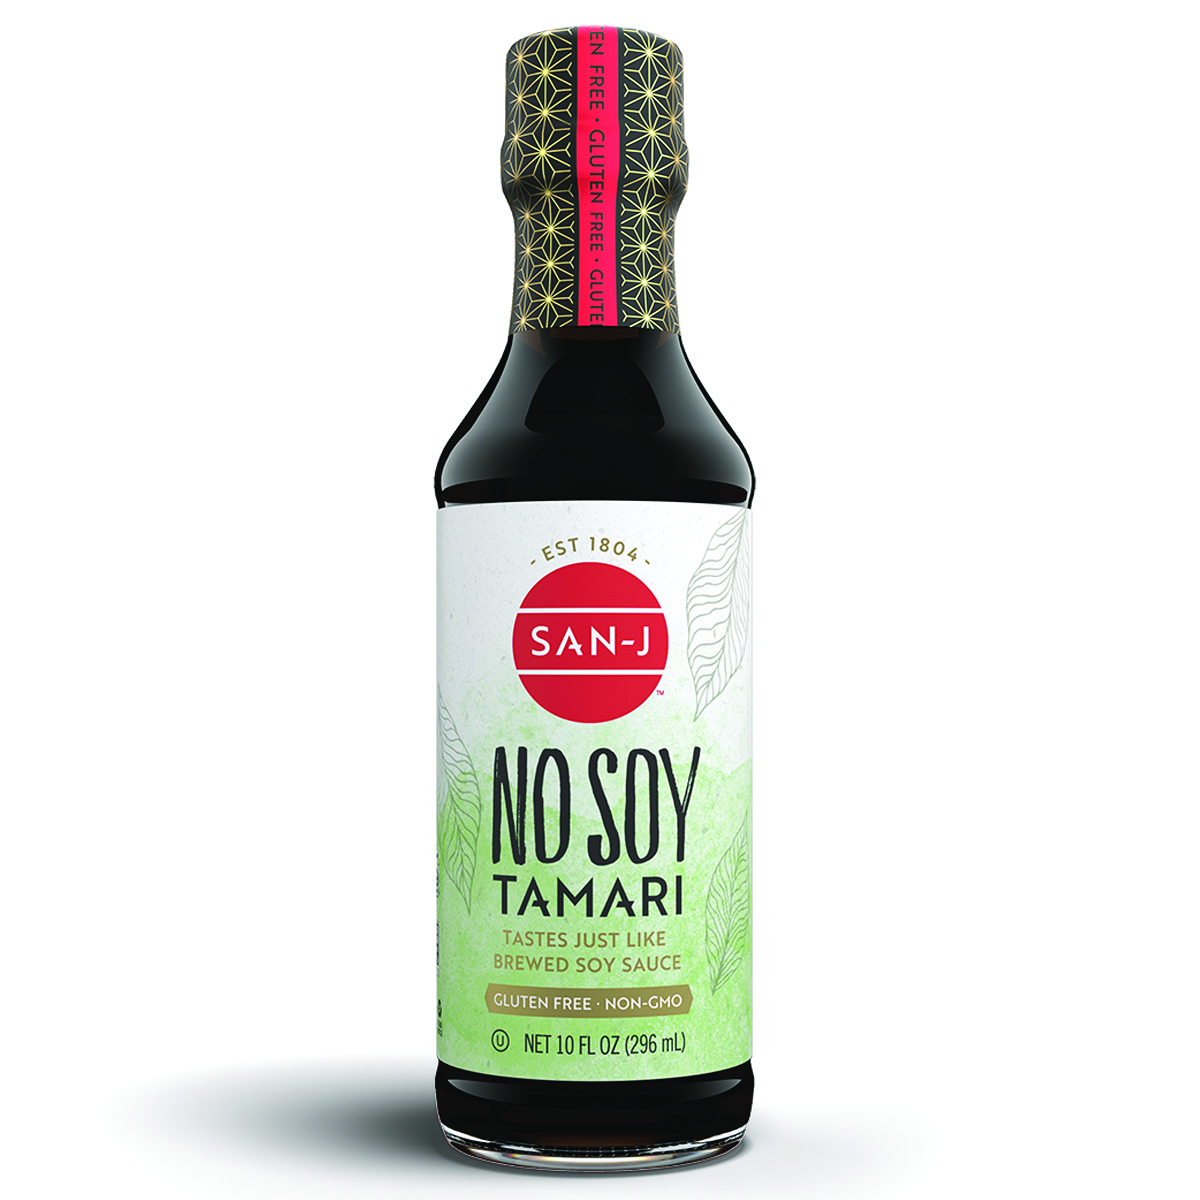 No soy tamari sauce bottle by sanJ